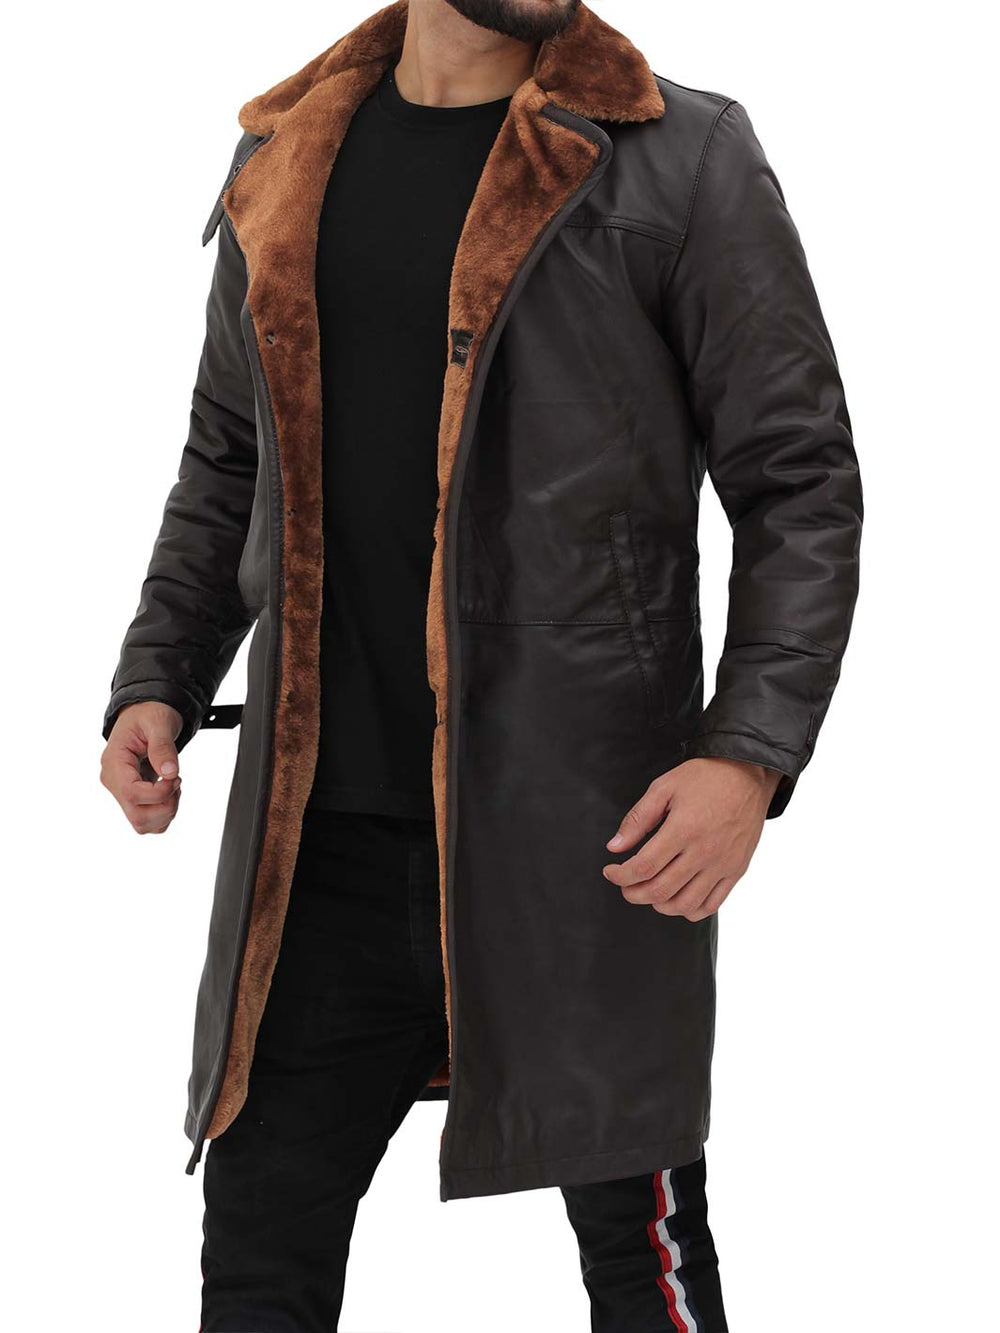 Turlock Mens Brown Shealing Leather Coat